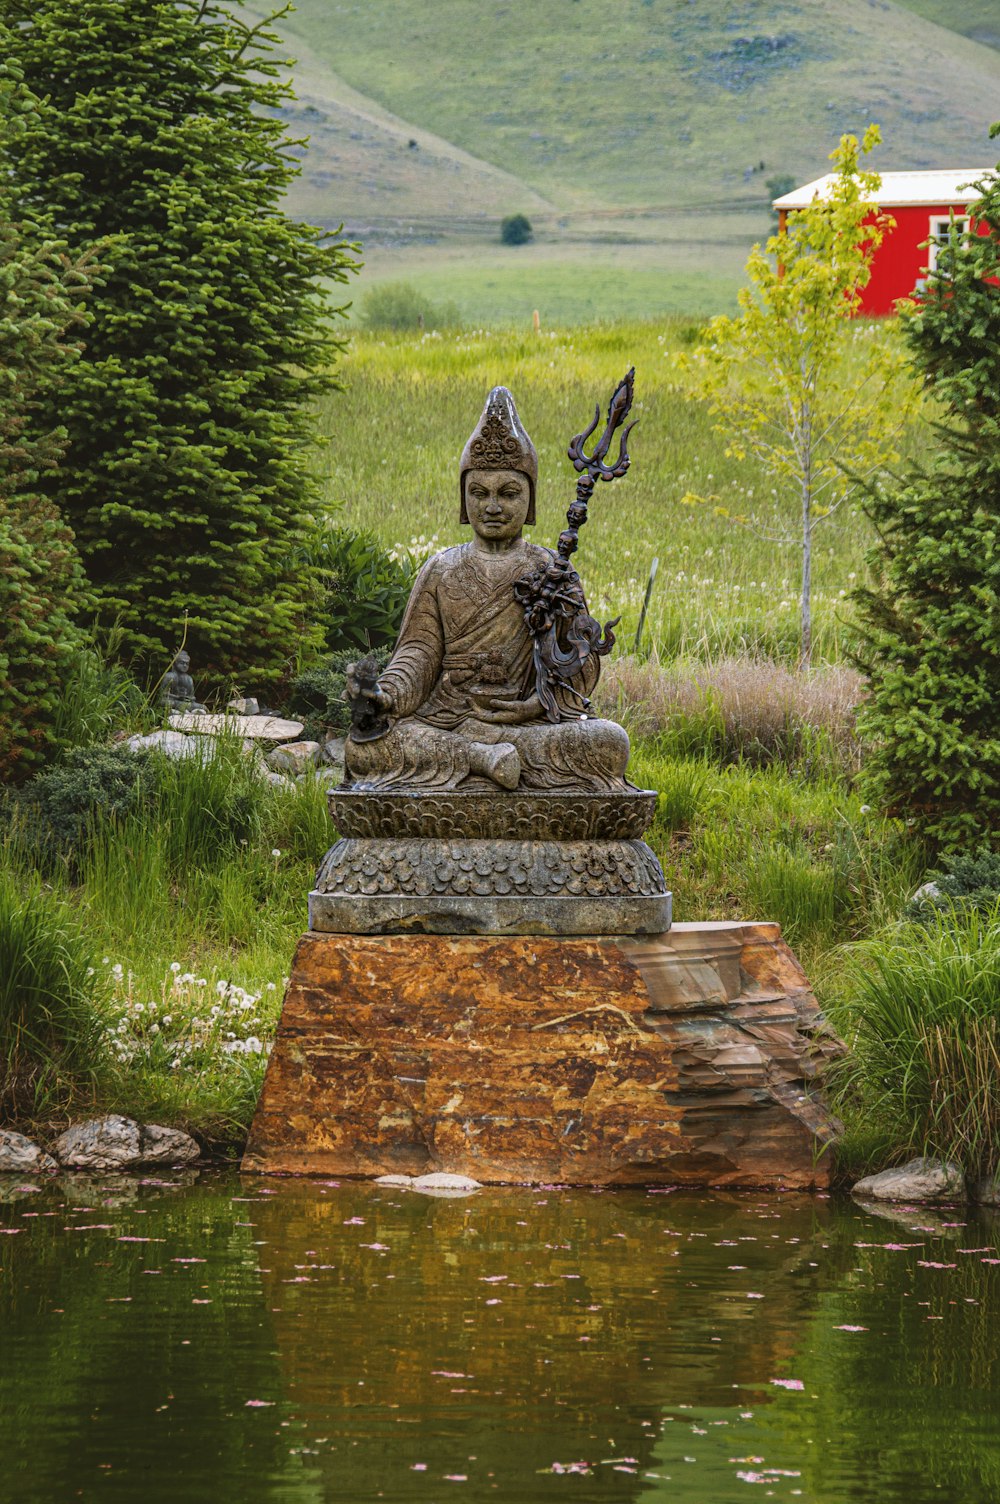 Uma estátua de um Buda sentado em uma lagoa